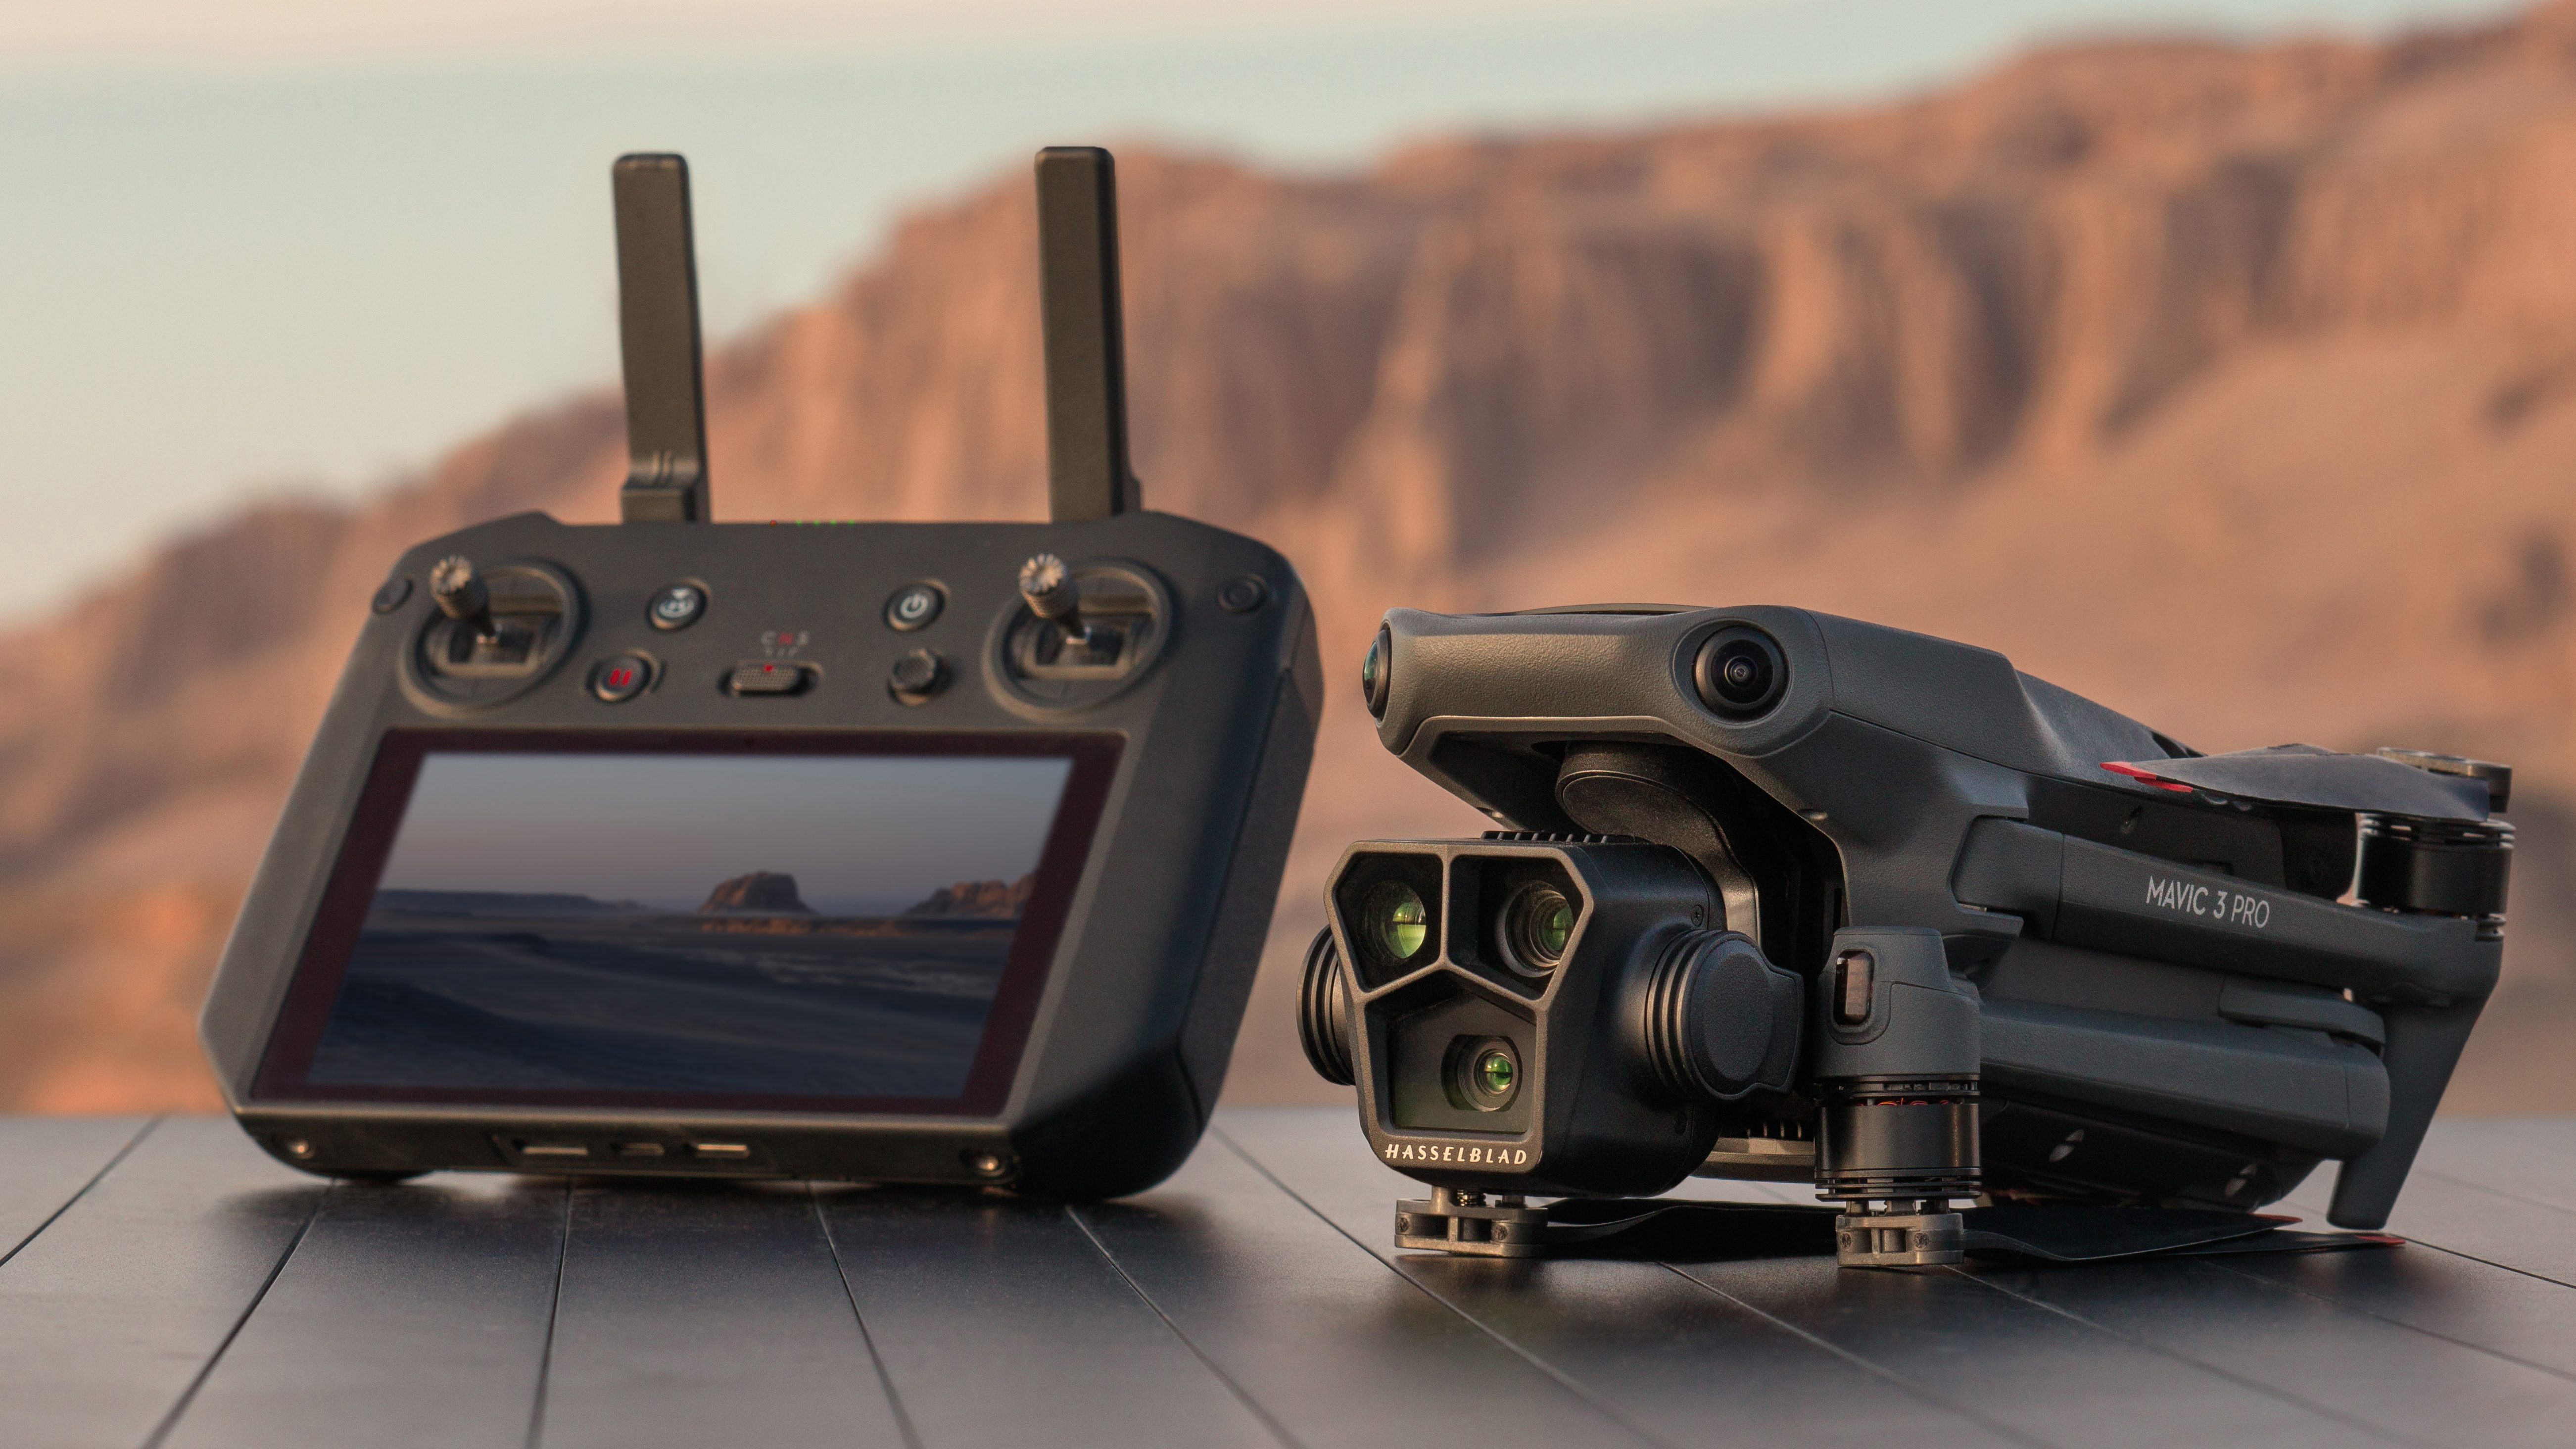 Die DJI Mavic 3 Pro Drohne sitzt auf einem Felsen neben ihrem Controller